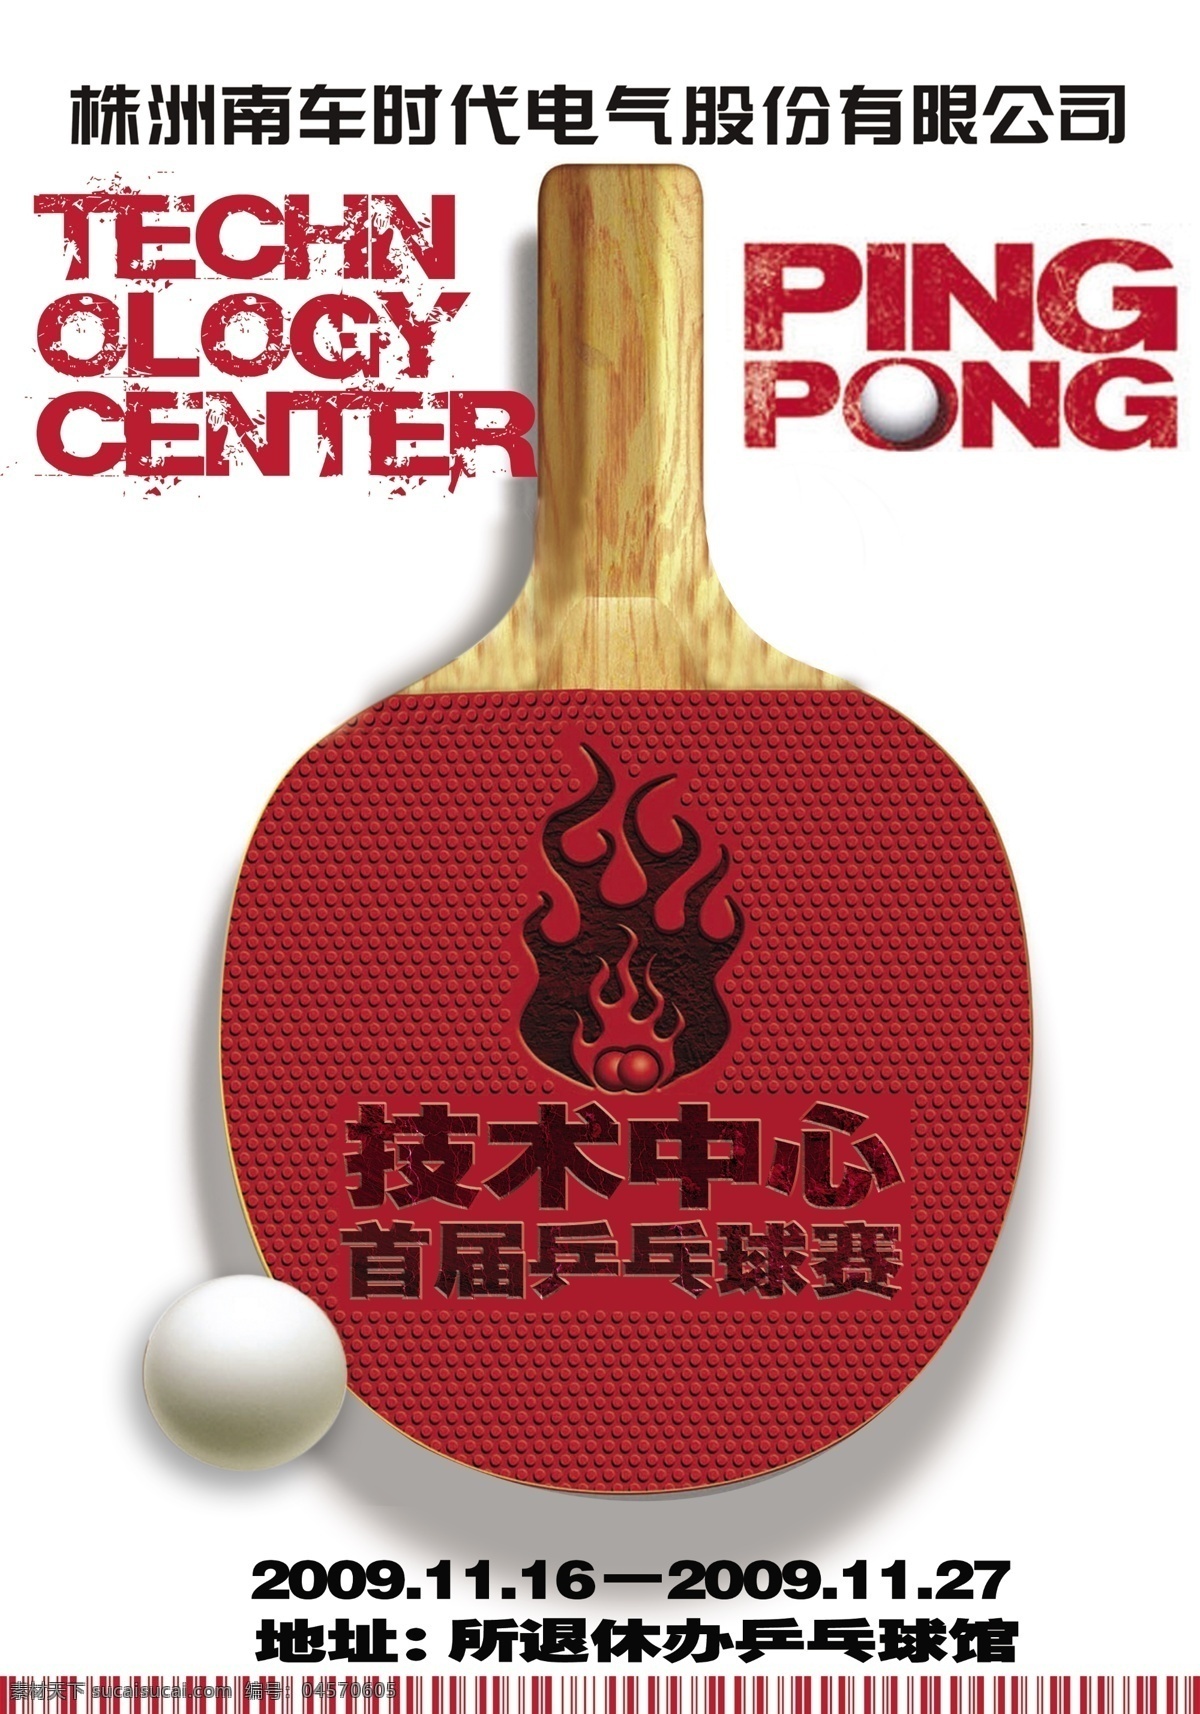 海报创意设计 乒乓球球比赛 创意海报 球拍 红色经典 多层素材 广告设计模板 源文件 白色